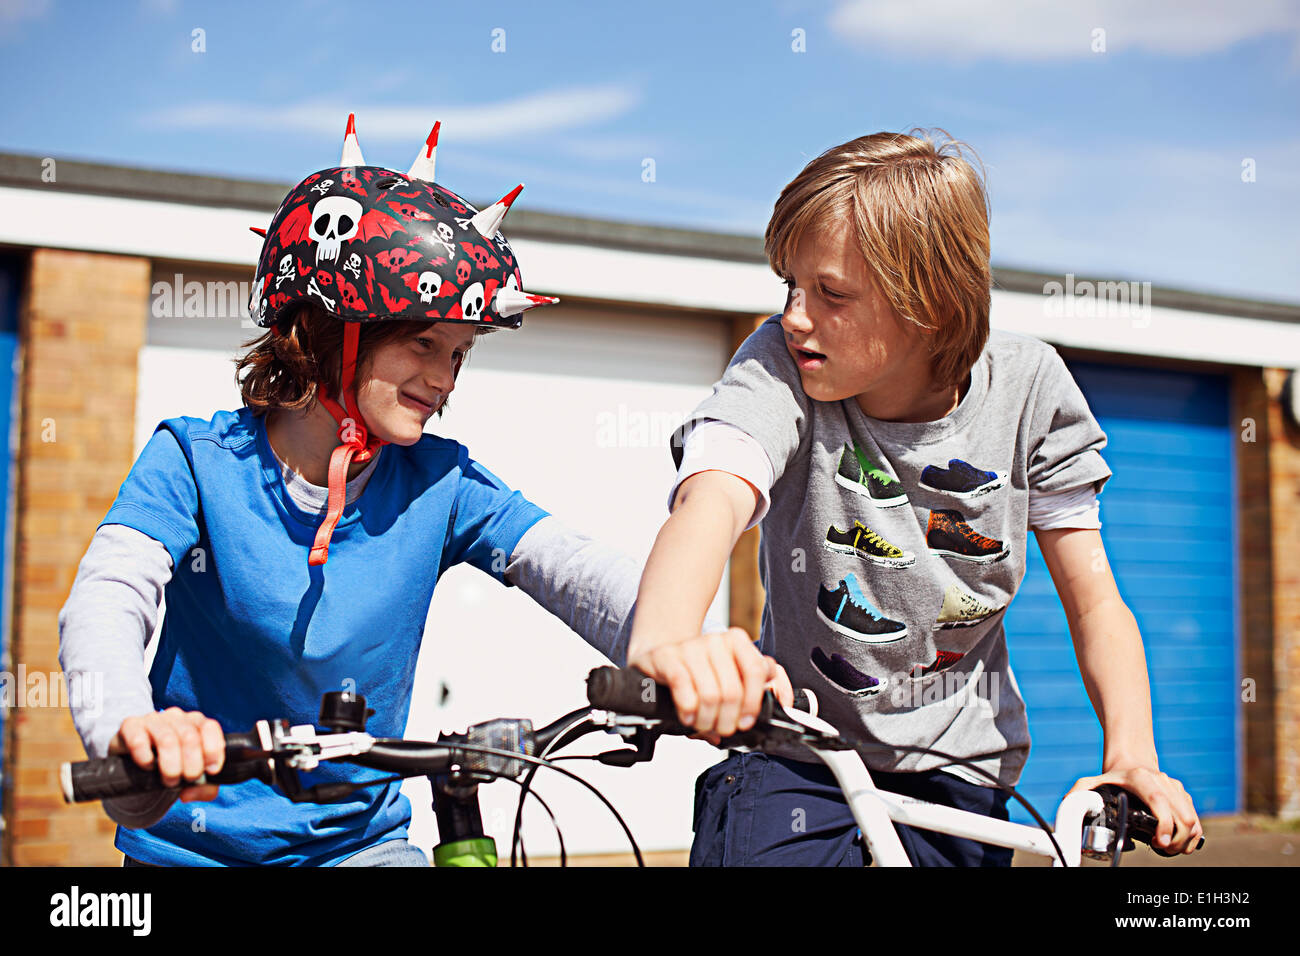 Zwei jungen auf Fahrrädern Stockfoto